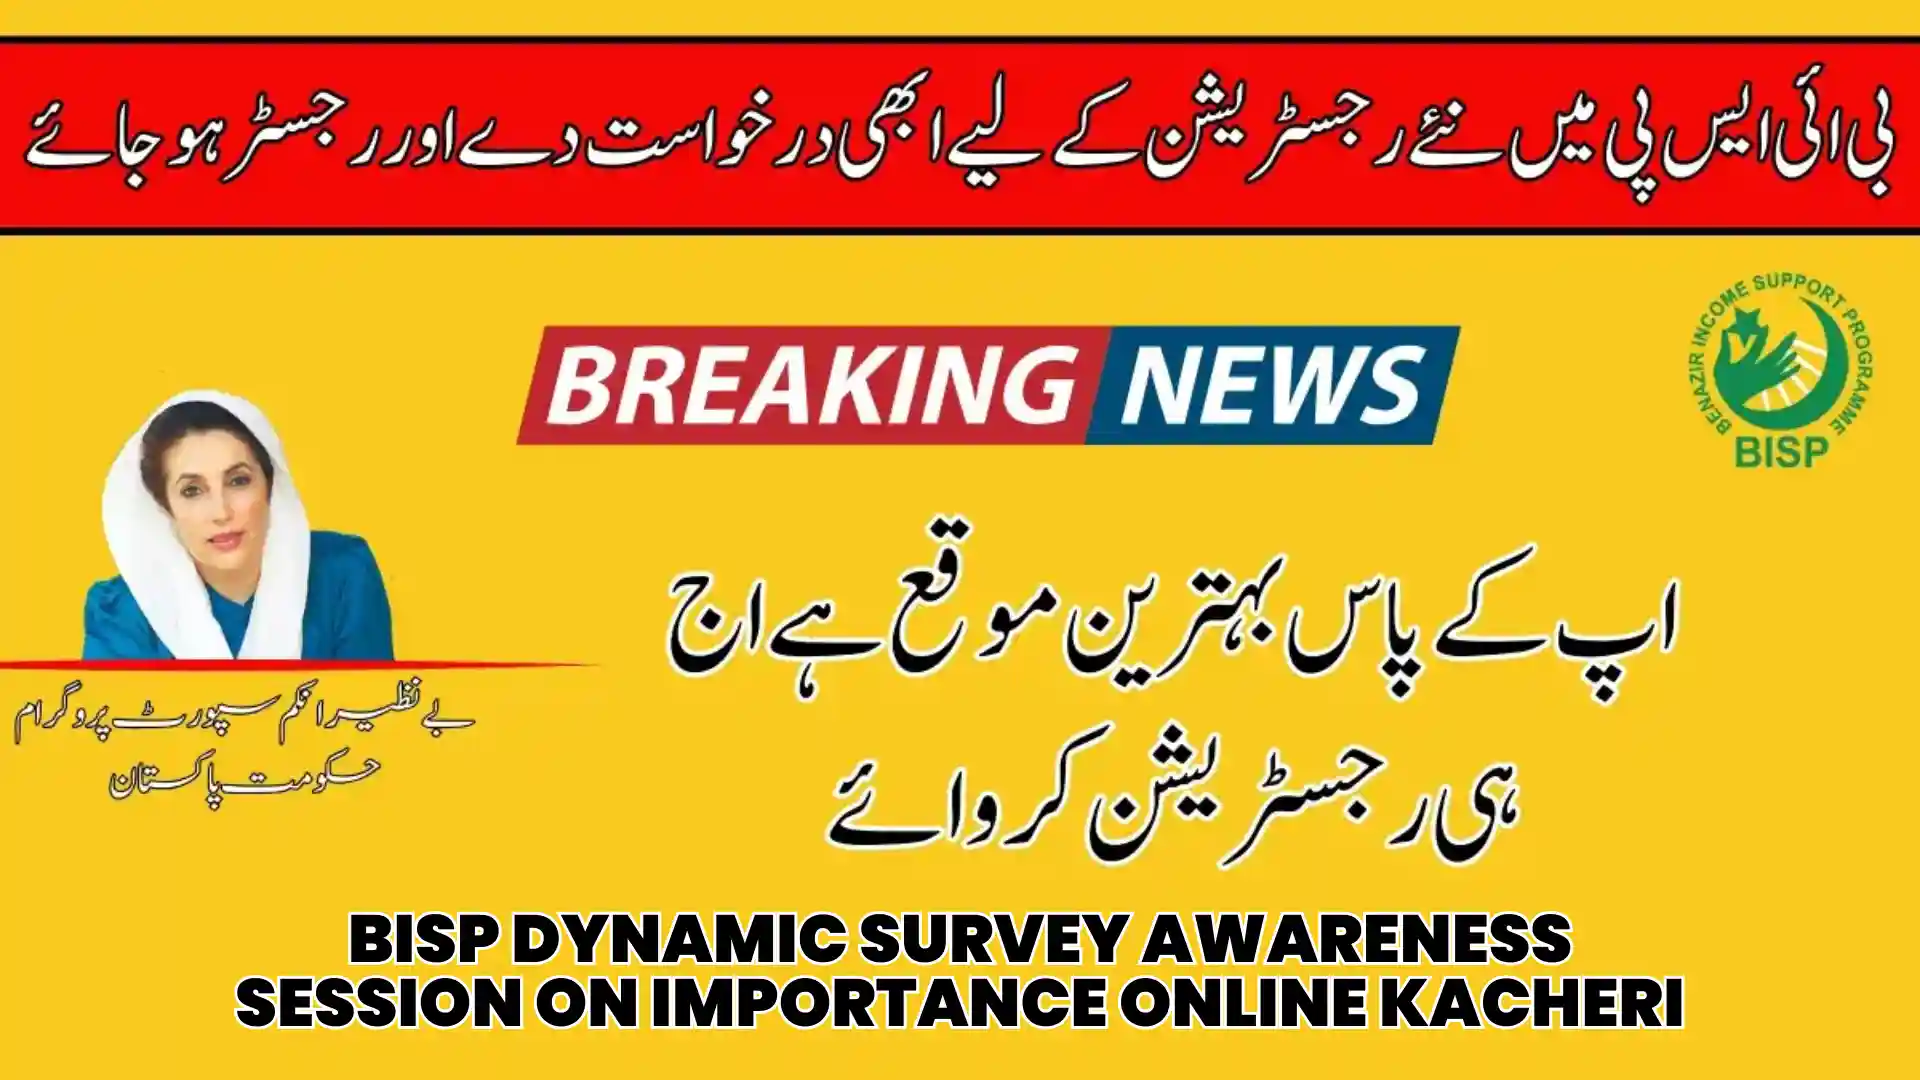 BISP Dynamic Survey Awareness Session on Importance Online Kacheri